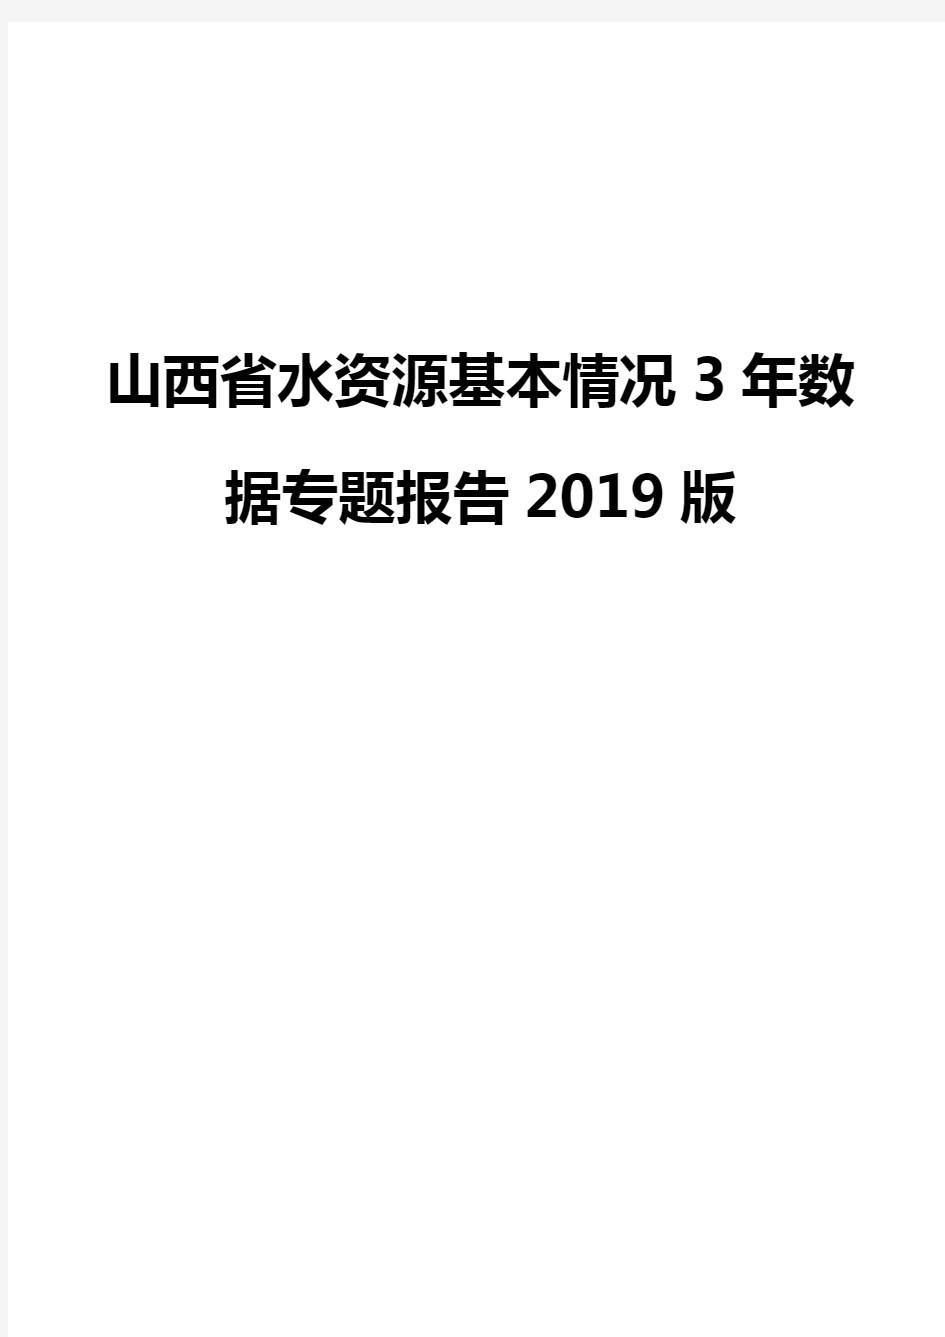 山西省水资源基本情况3年数据专题报告2019版